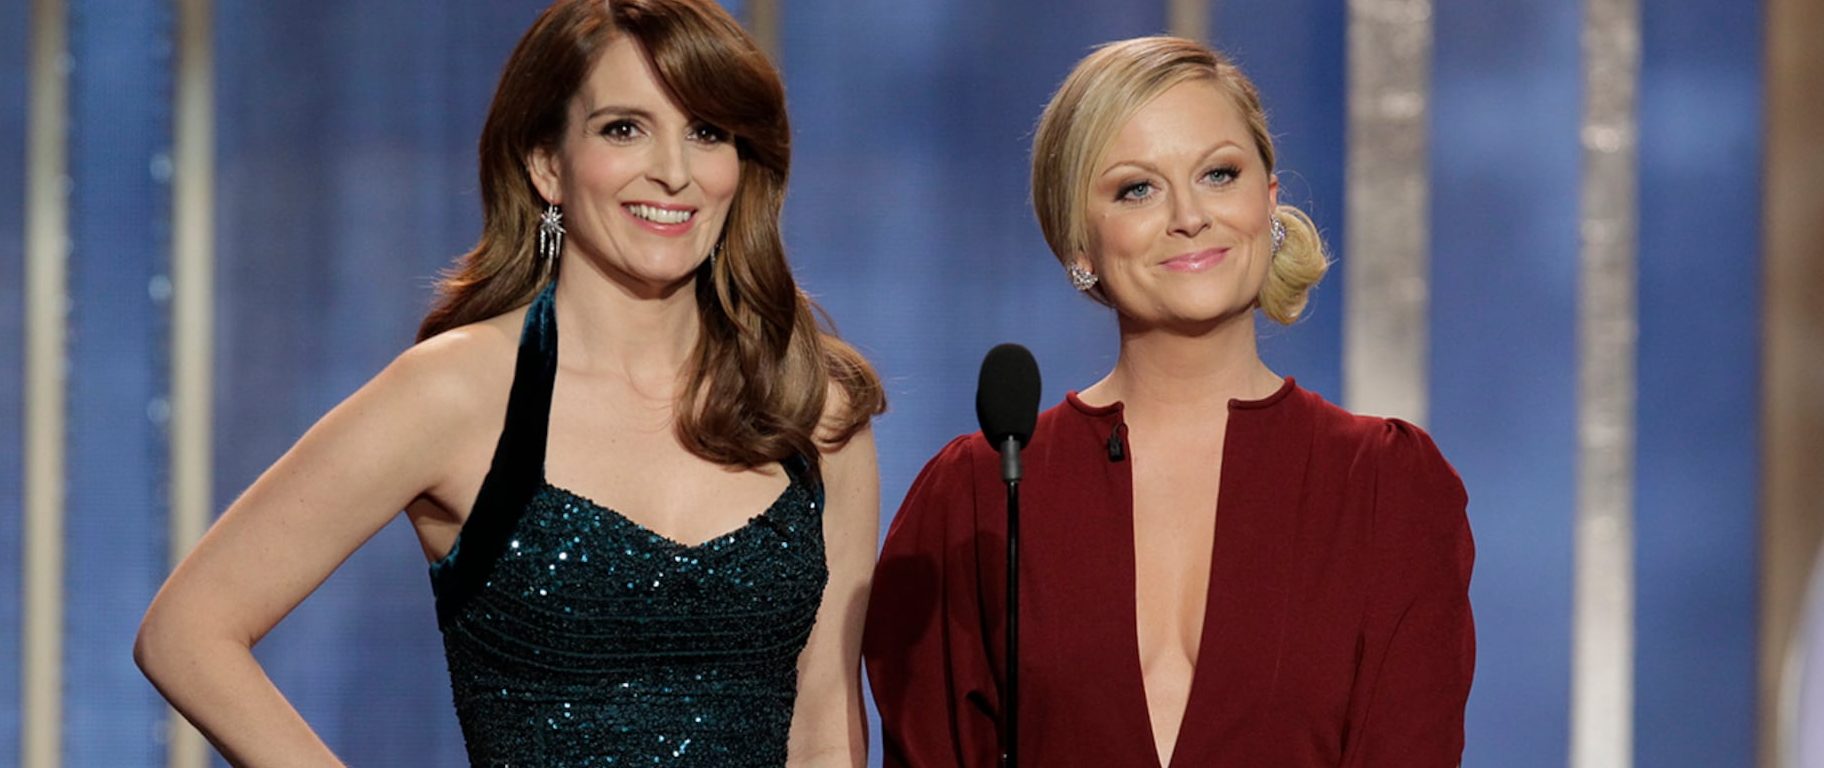 Tina Fey dhe Amy Pohler do të prezantojnë “Golden Globes 2021” nga vende të ndryshme për shkak të situatës me COVID-19